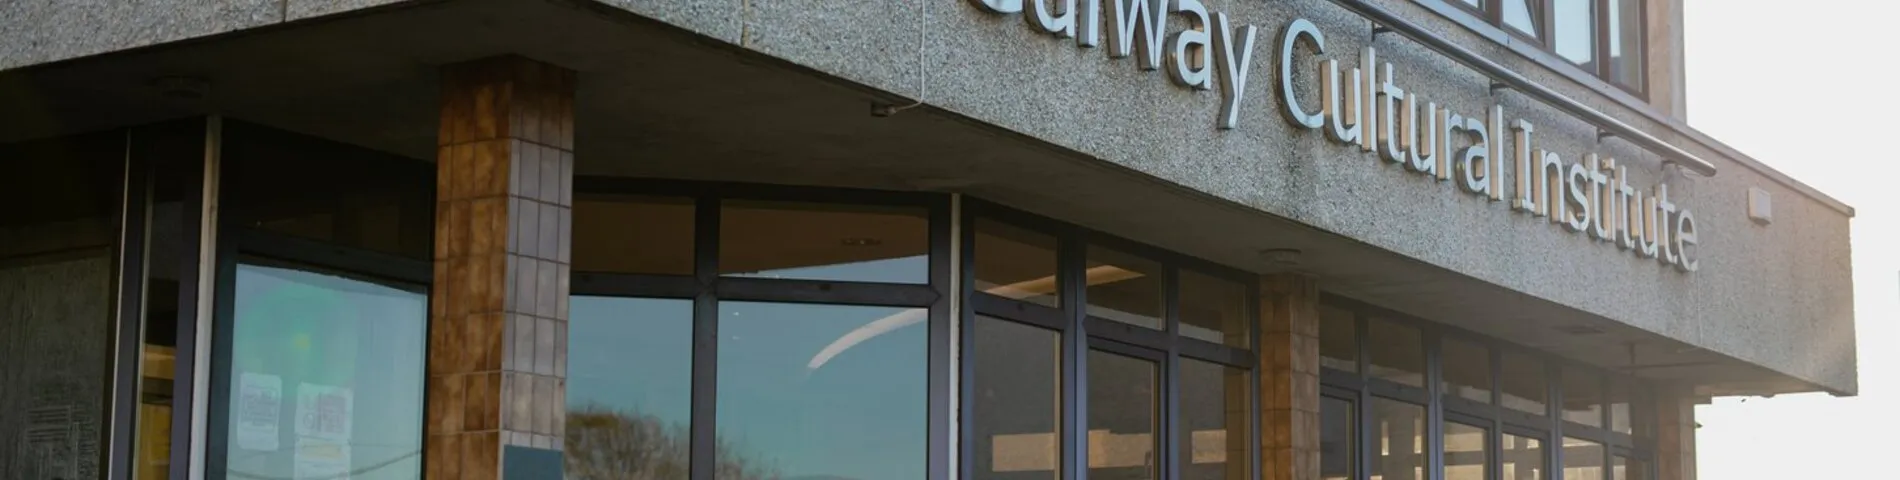 Galway Cultural Institute صورة 1